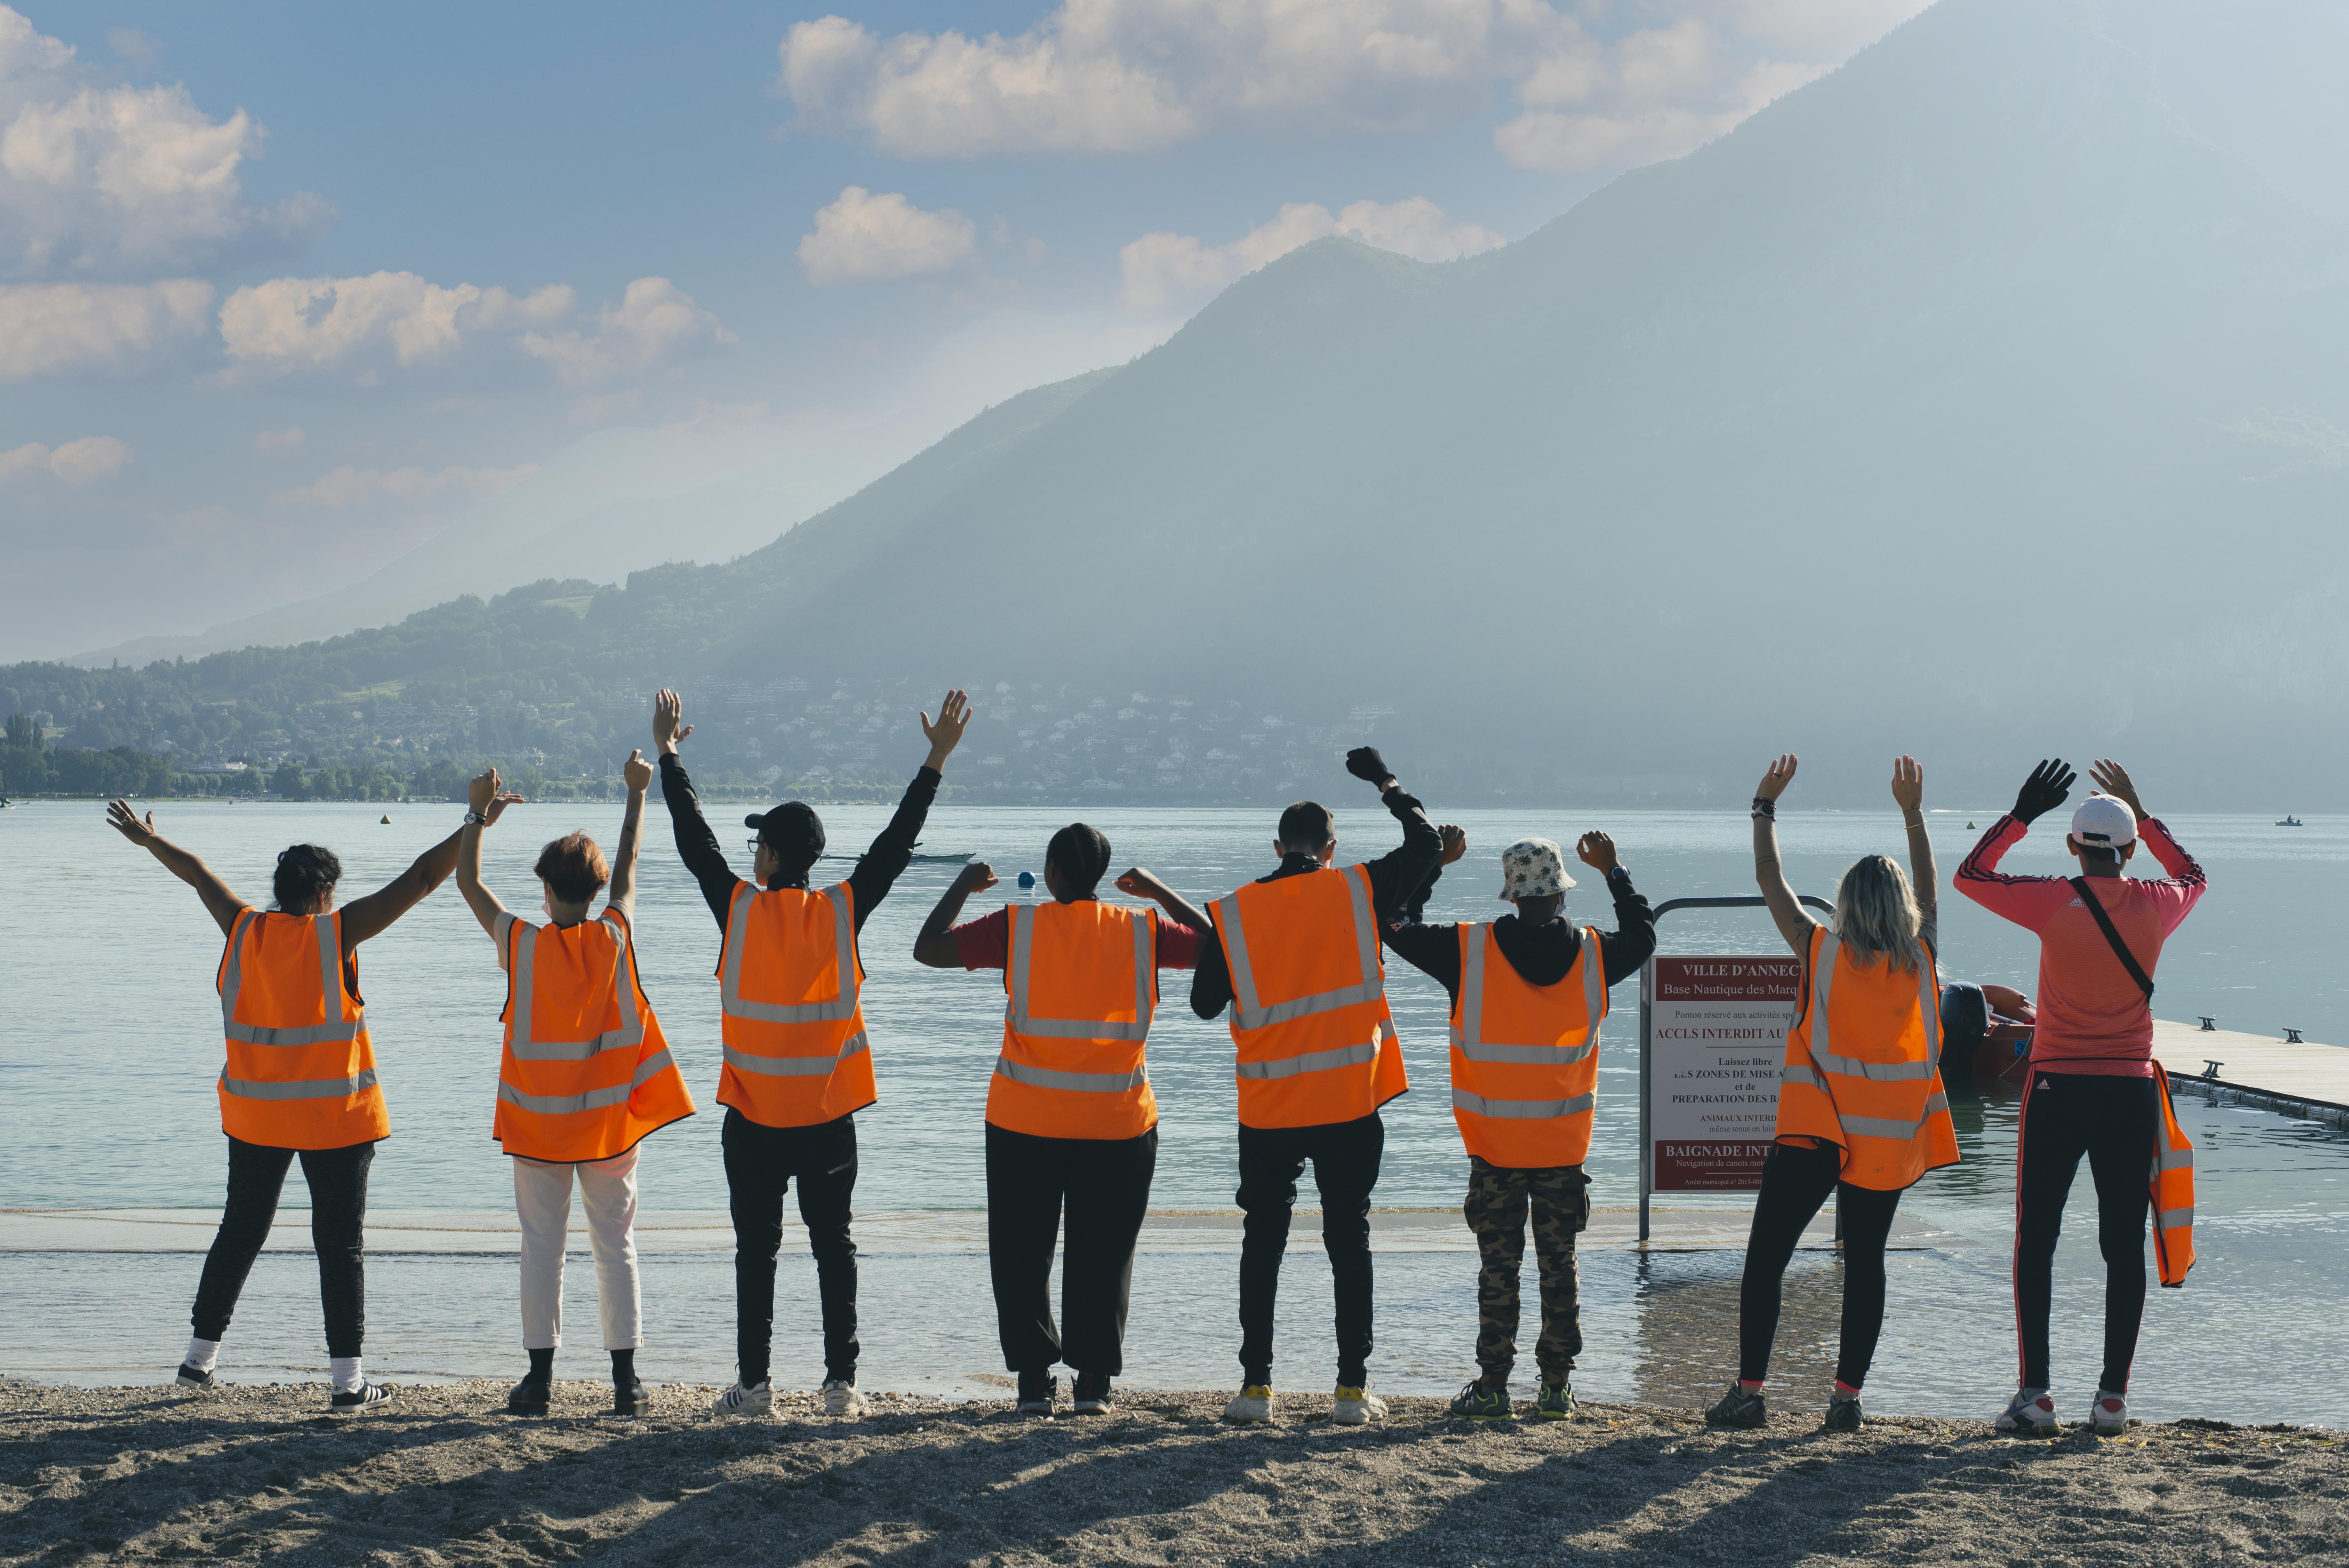 Le nettoyage des plages pendant les vacances d’été fait partie des chantiers éducatifs proposés aux jeunes par l’association.